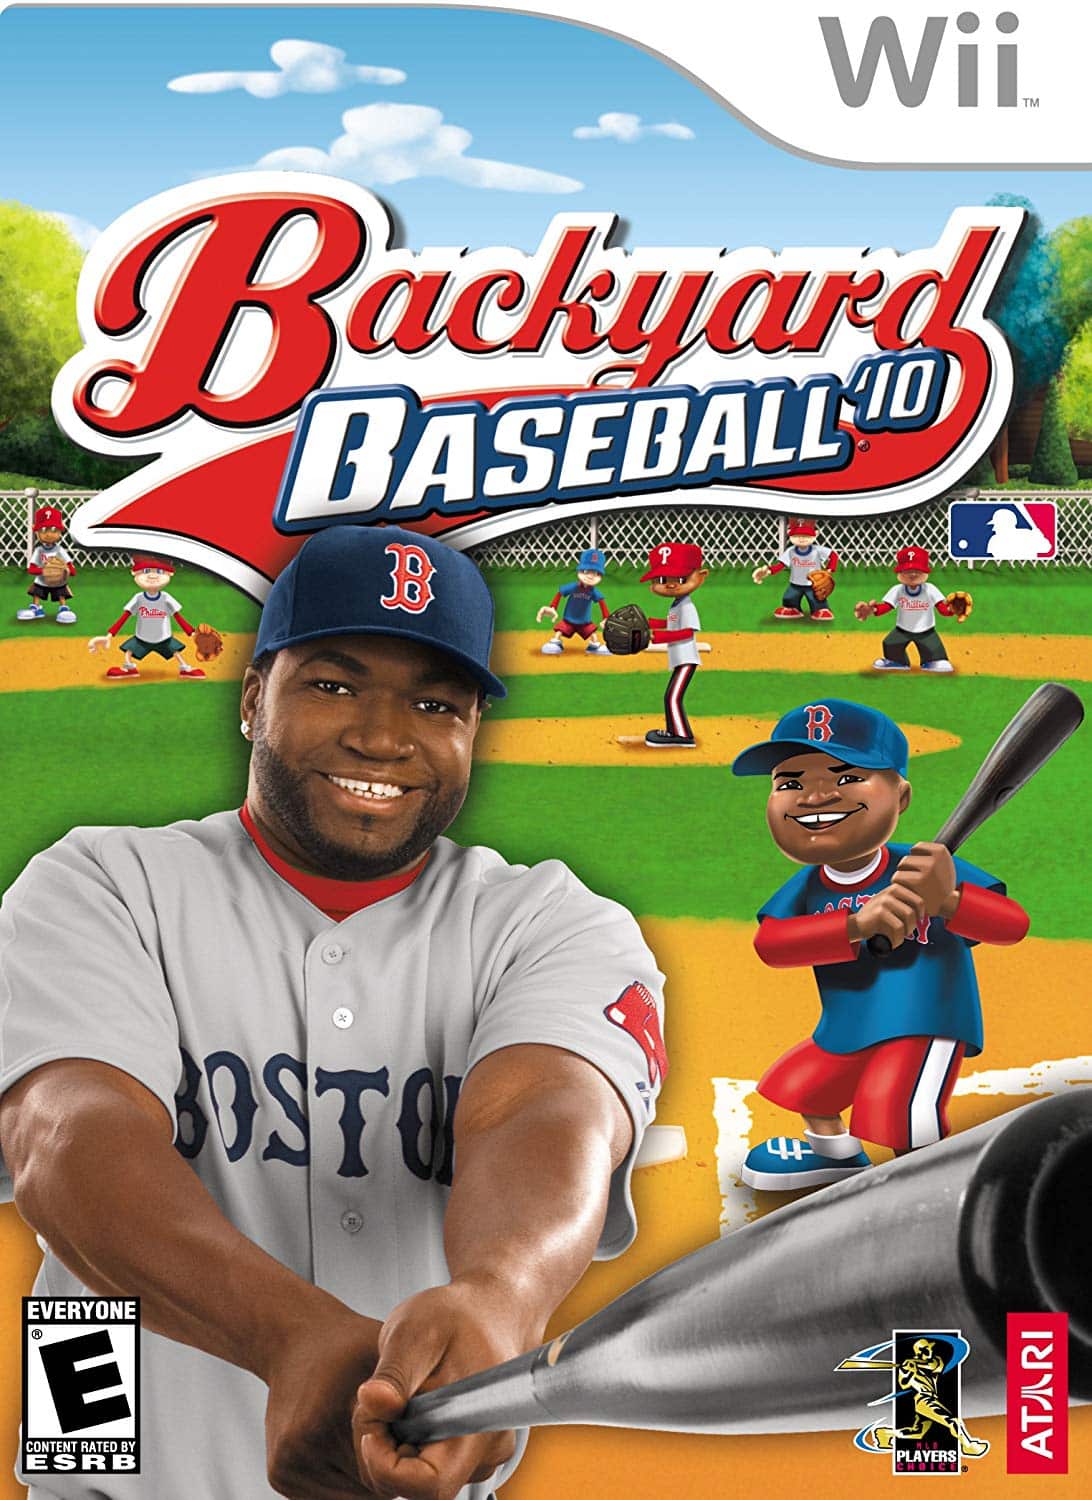 Backyard Baseball '10 facts